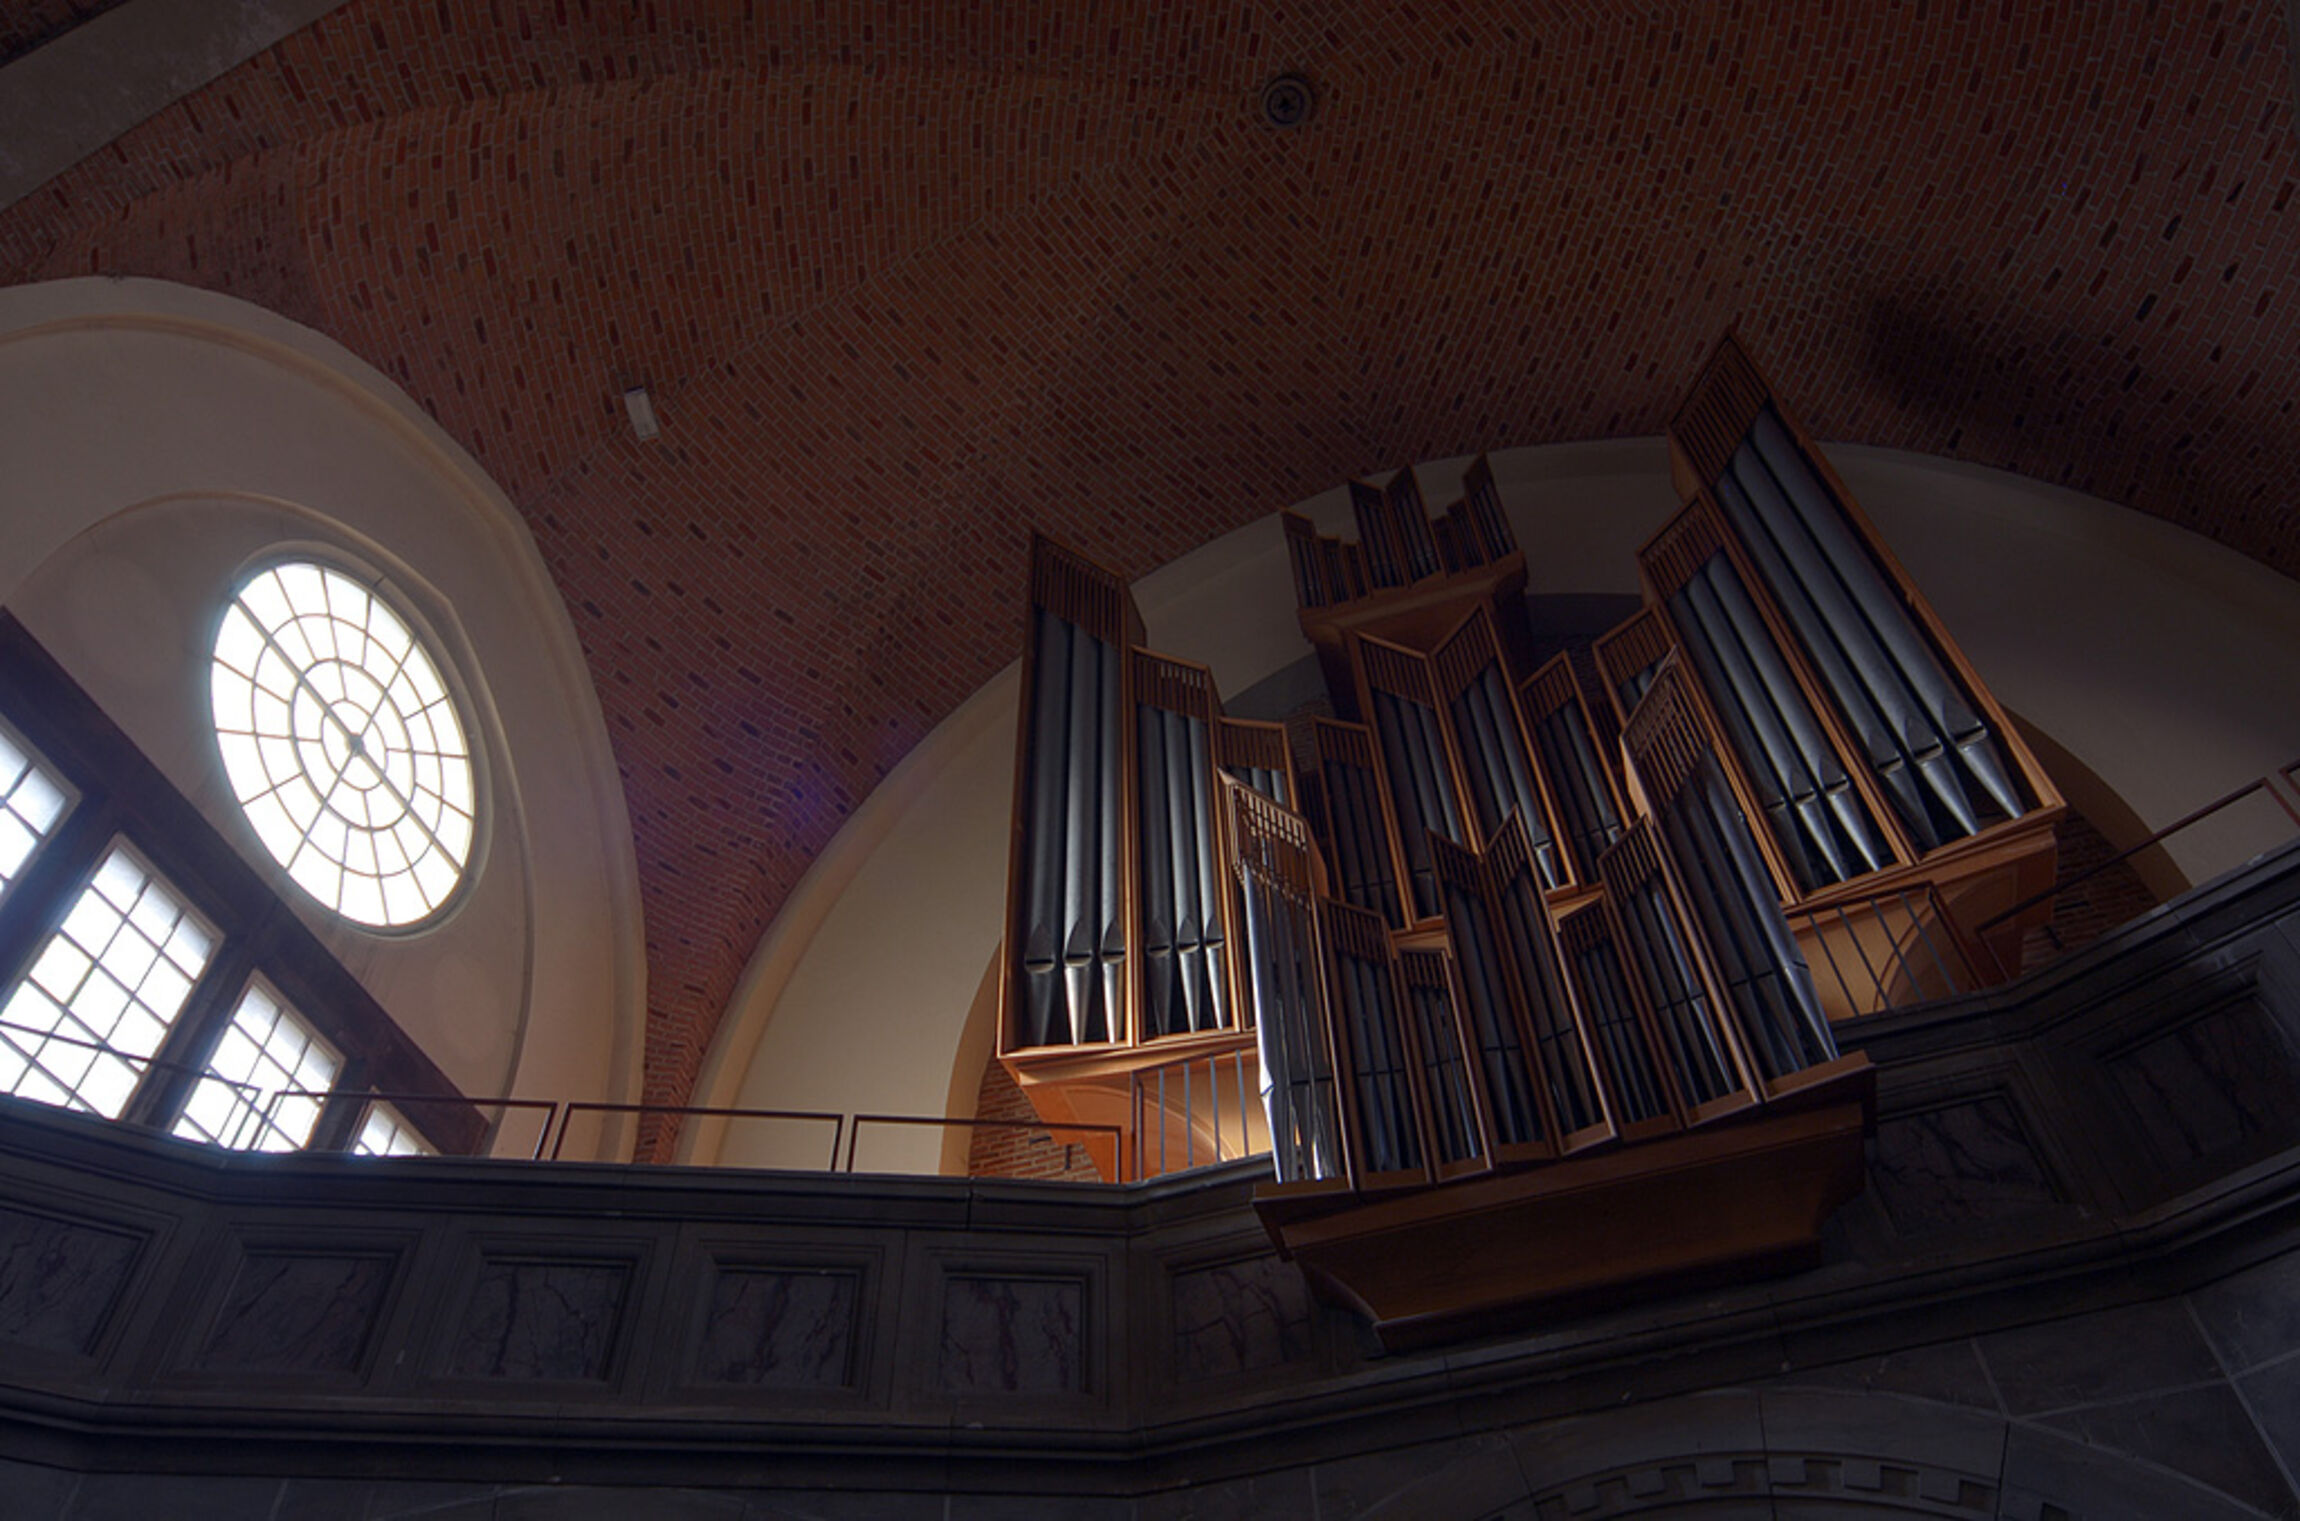 Orgel der Markuskirche